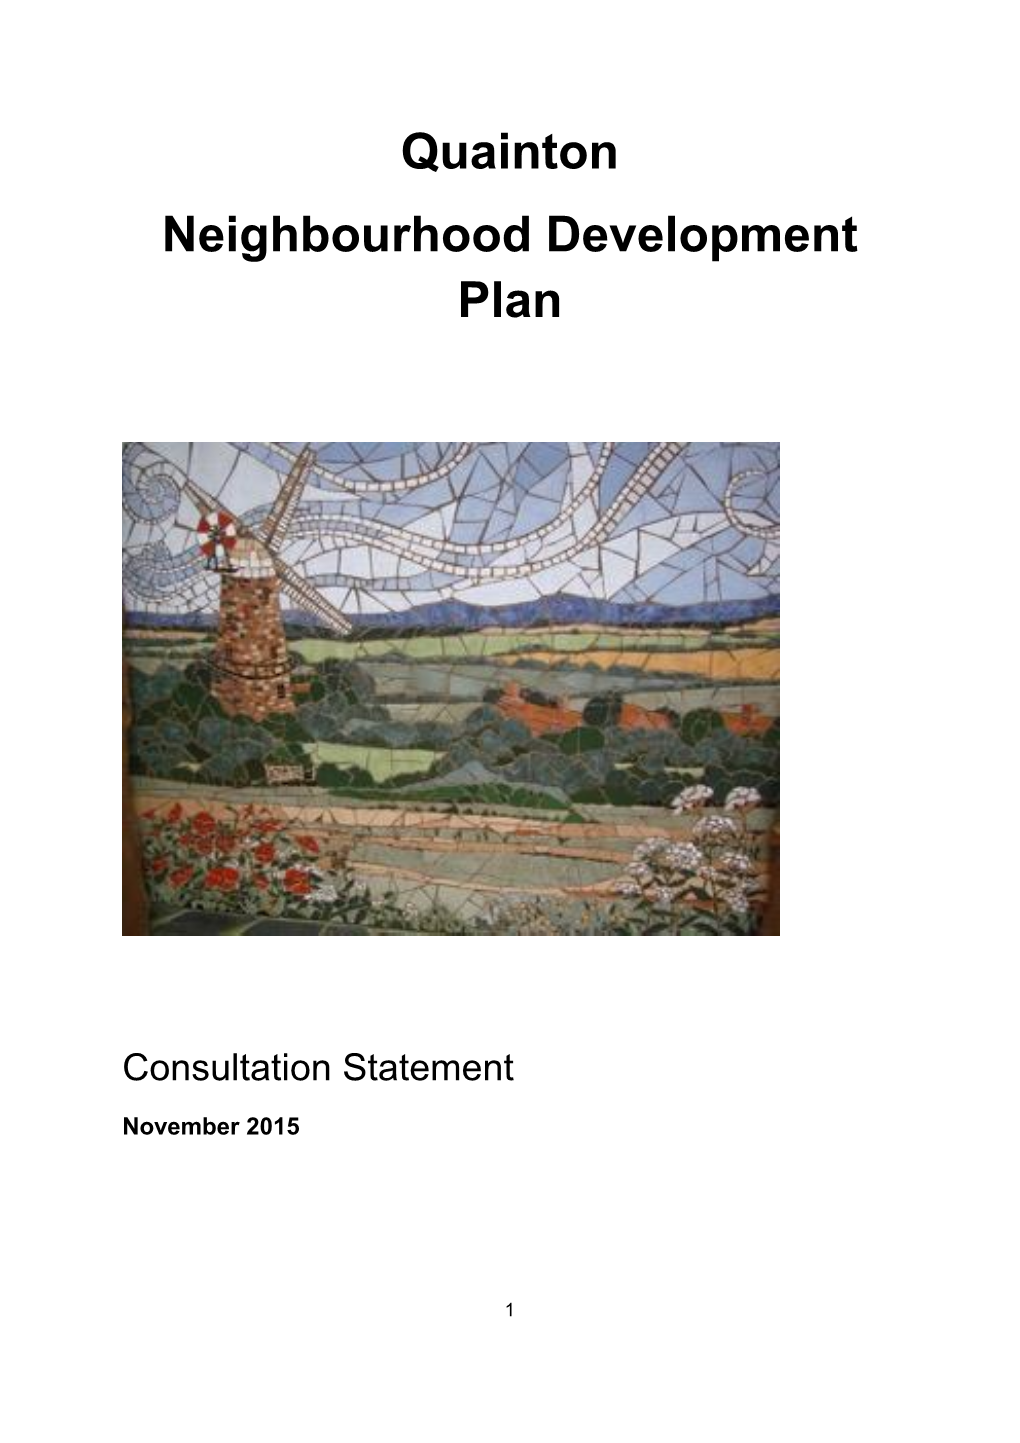 Quainton Neighbourhood Development Plan